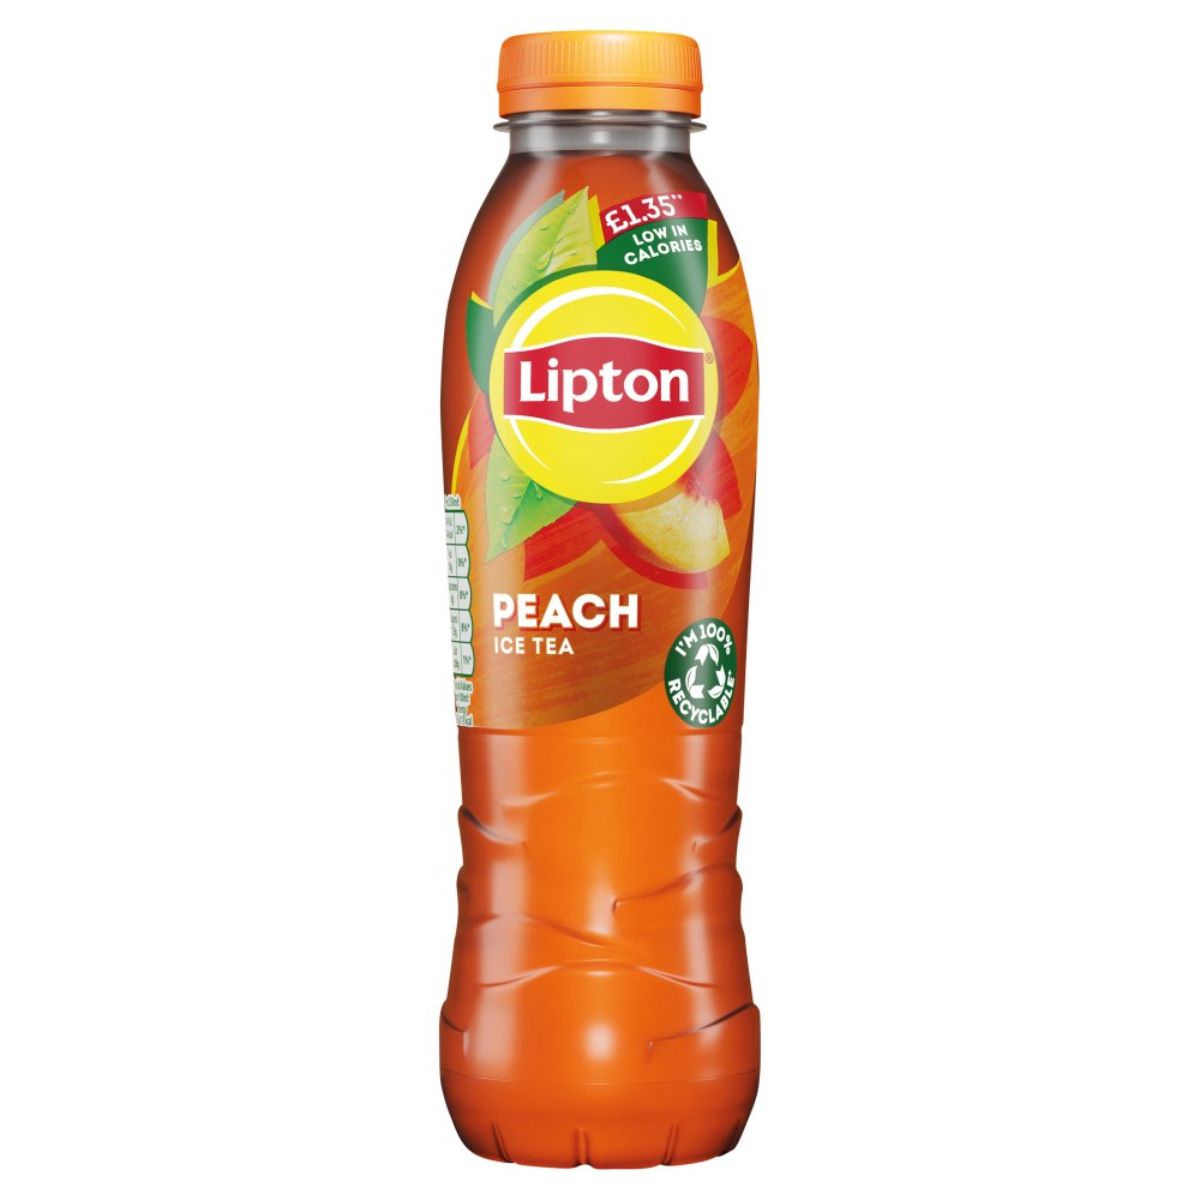 A bottle of Lipton - Peace Ice Tea - 500ml.